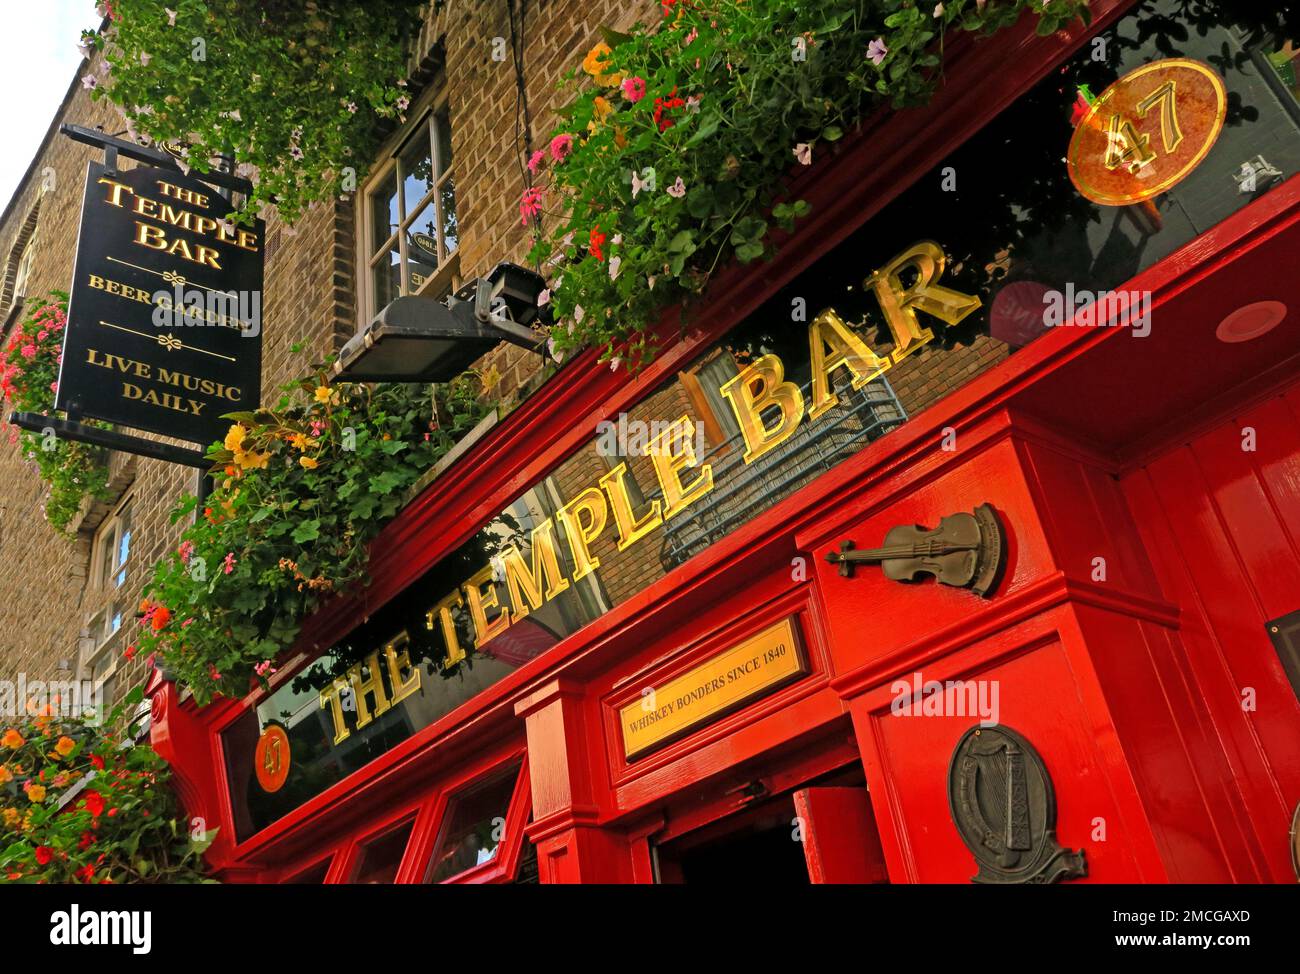 The temple bar pub, 47-48 Temple Bar, Dublin 2, Eire, D02 N725, Ireland Stock Photo